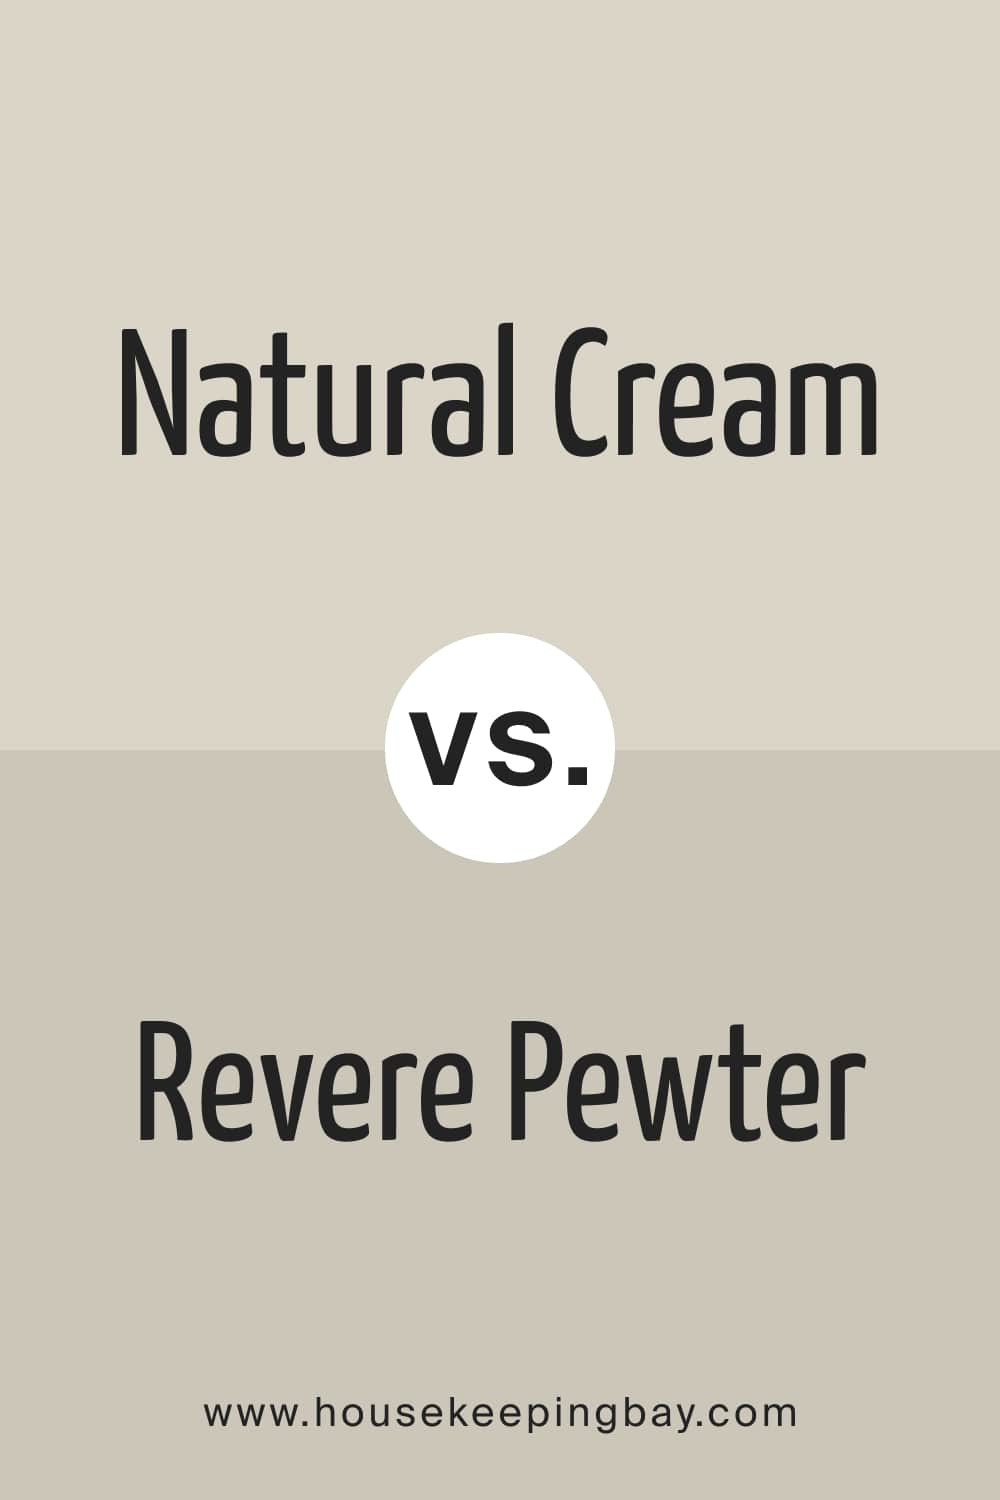 Natural Cream vs Revere Pewter